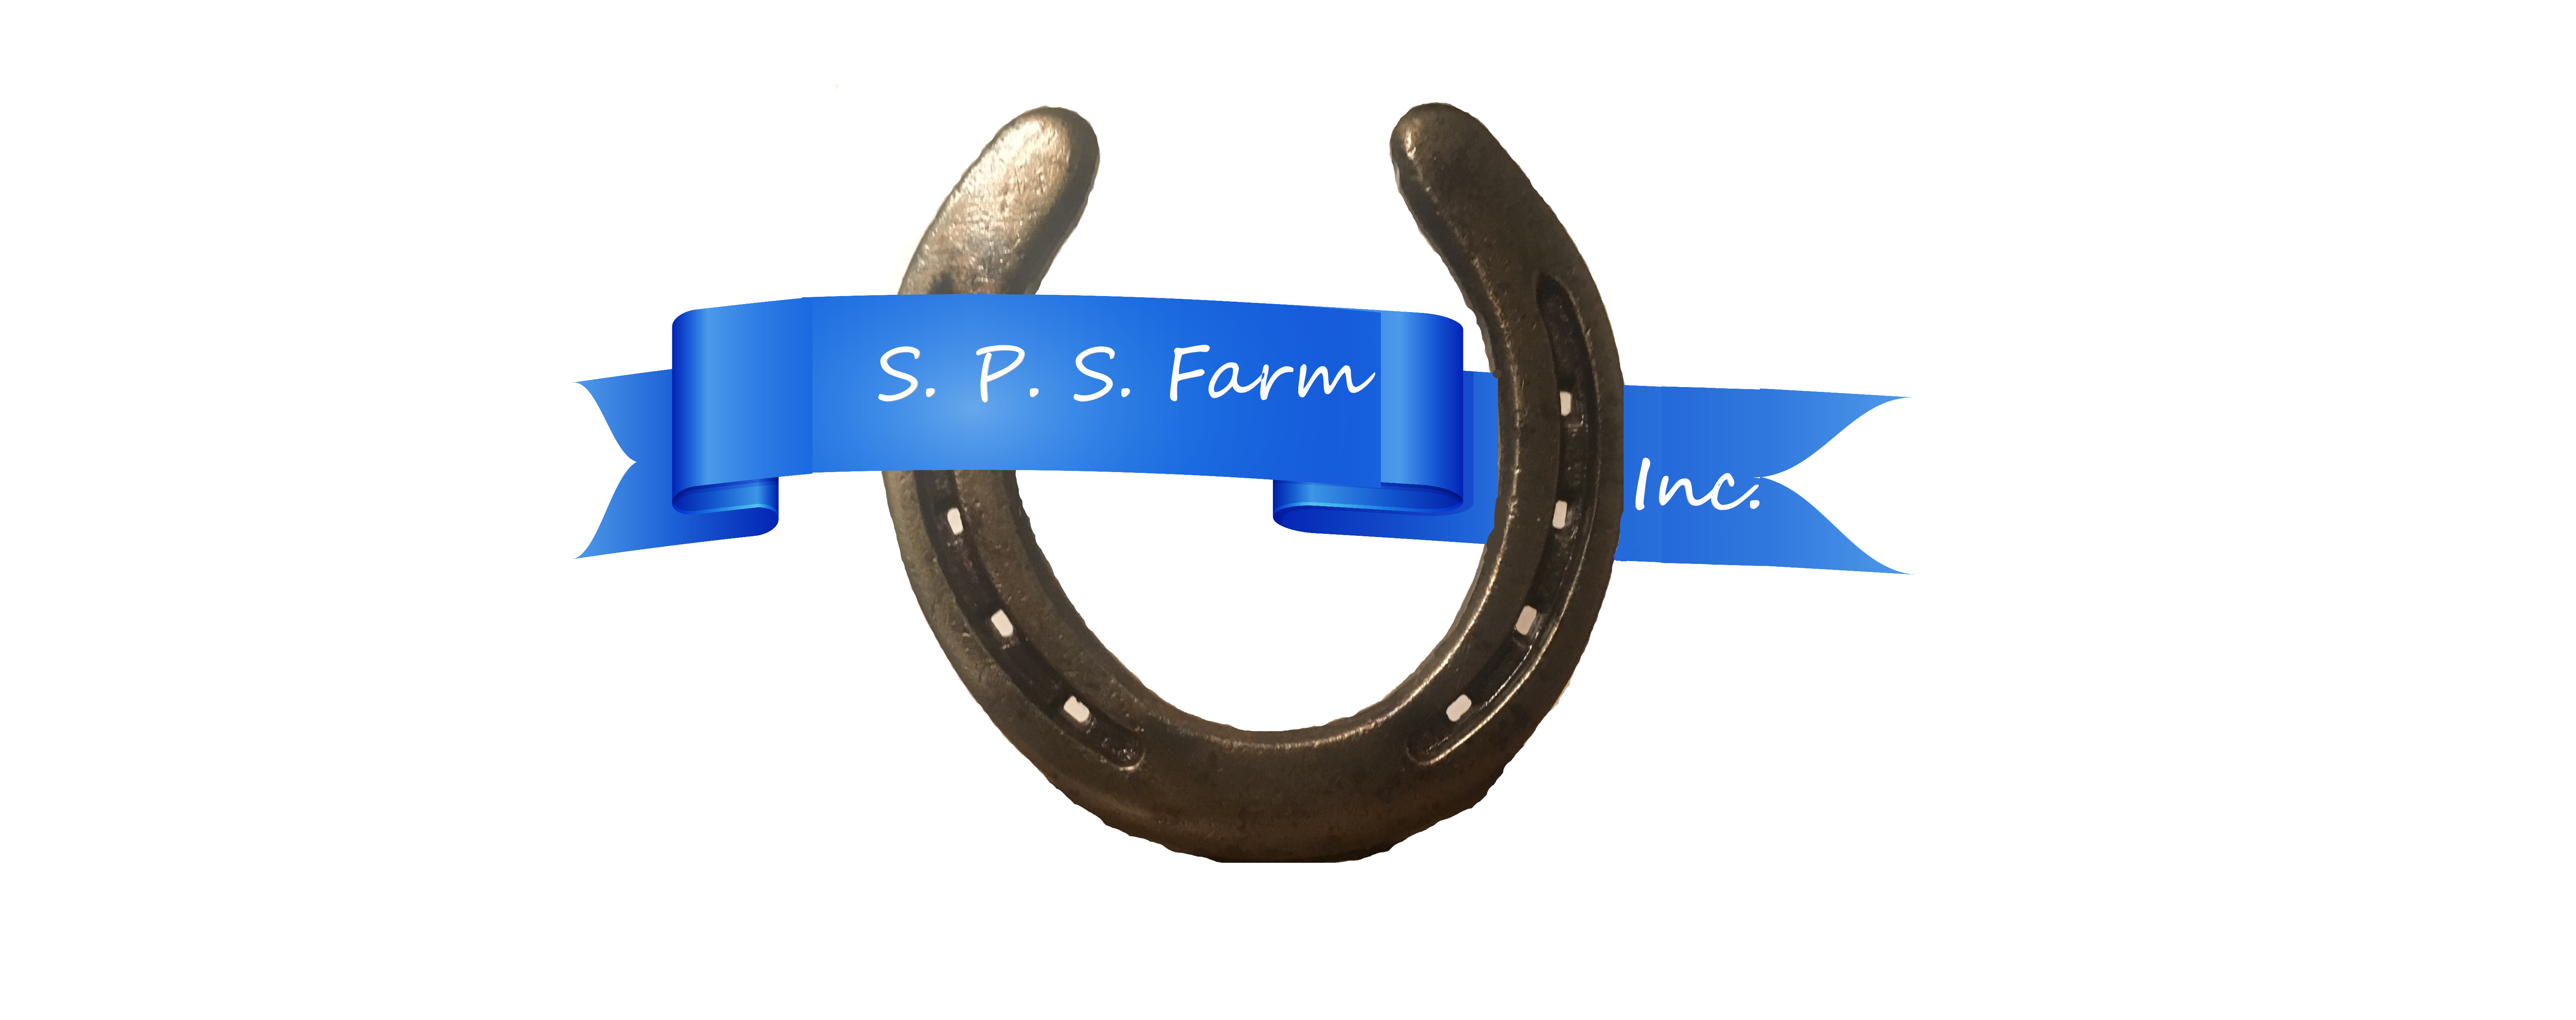 S.P.S. Farm Inc.